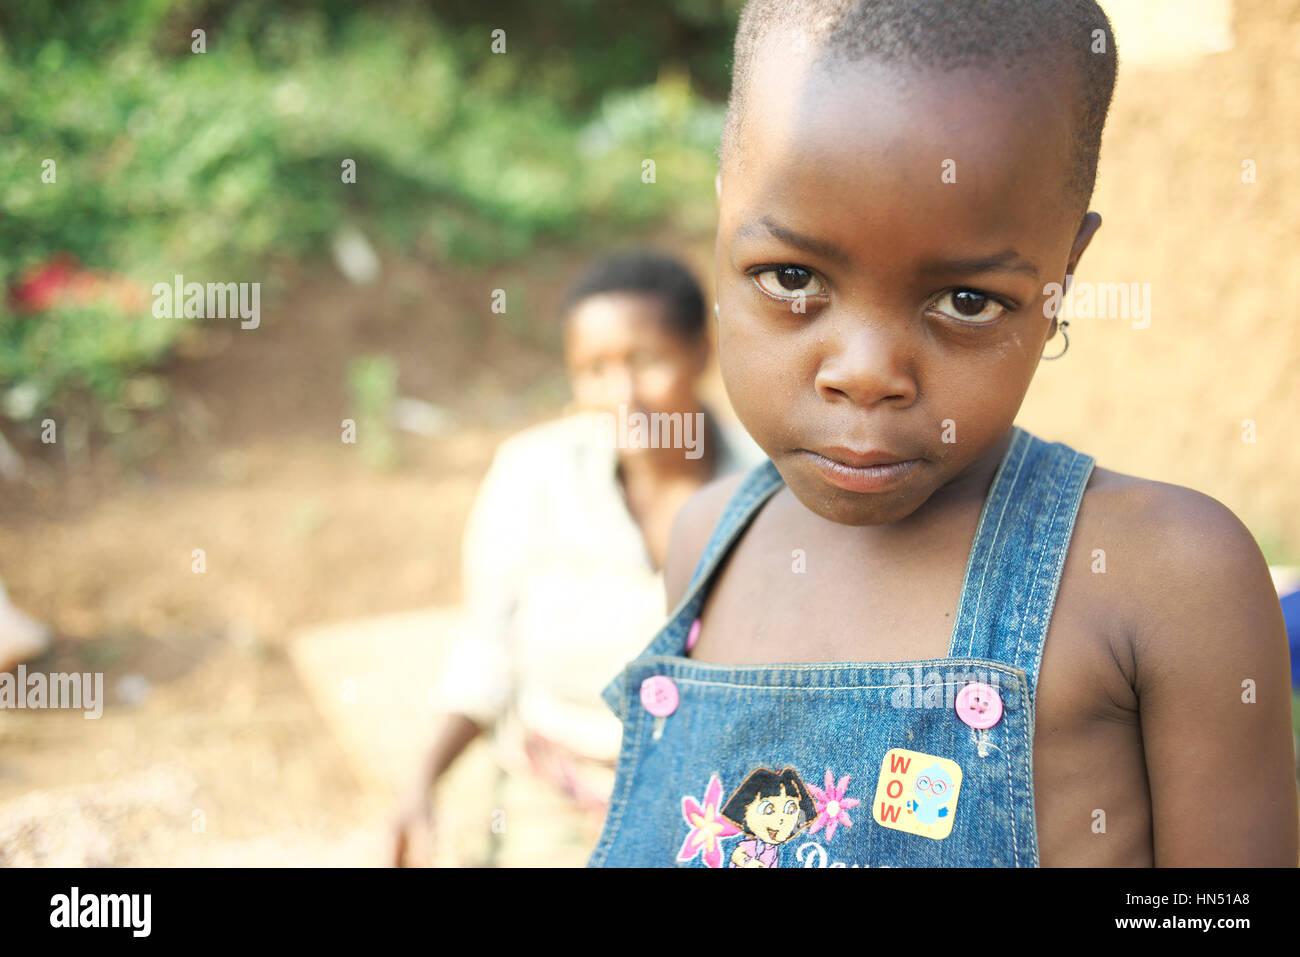 Les jeunes enfants ougandais à la maison dans les régions rurales de l'Afrique de l'Est regarde l'appareil photo Banque D'Images